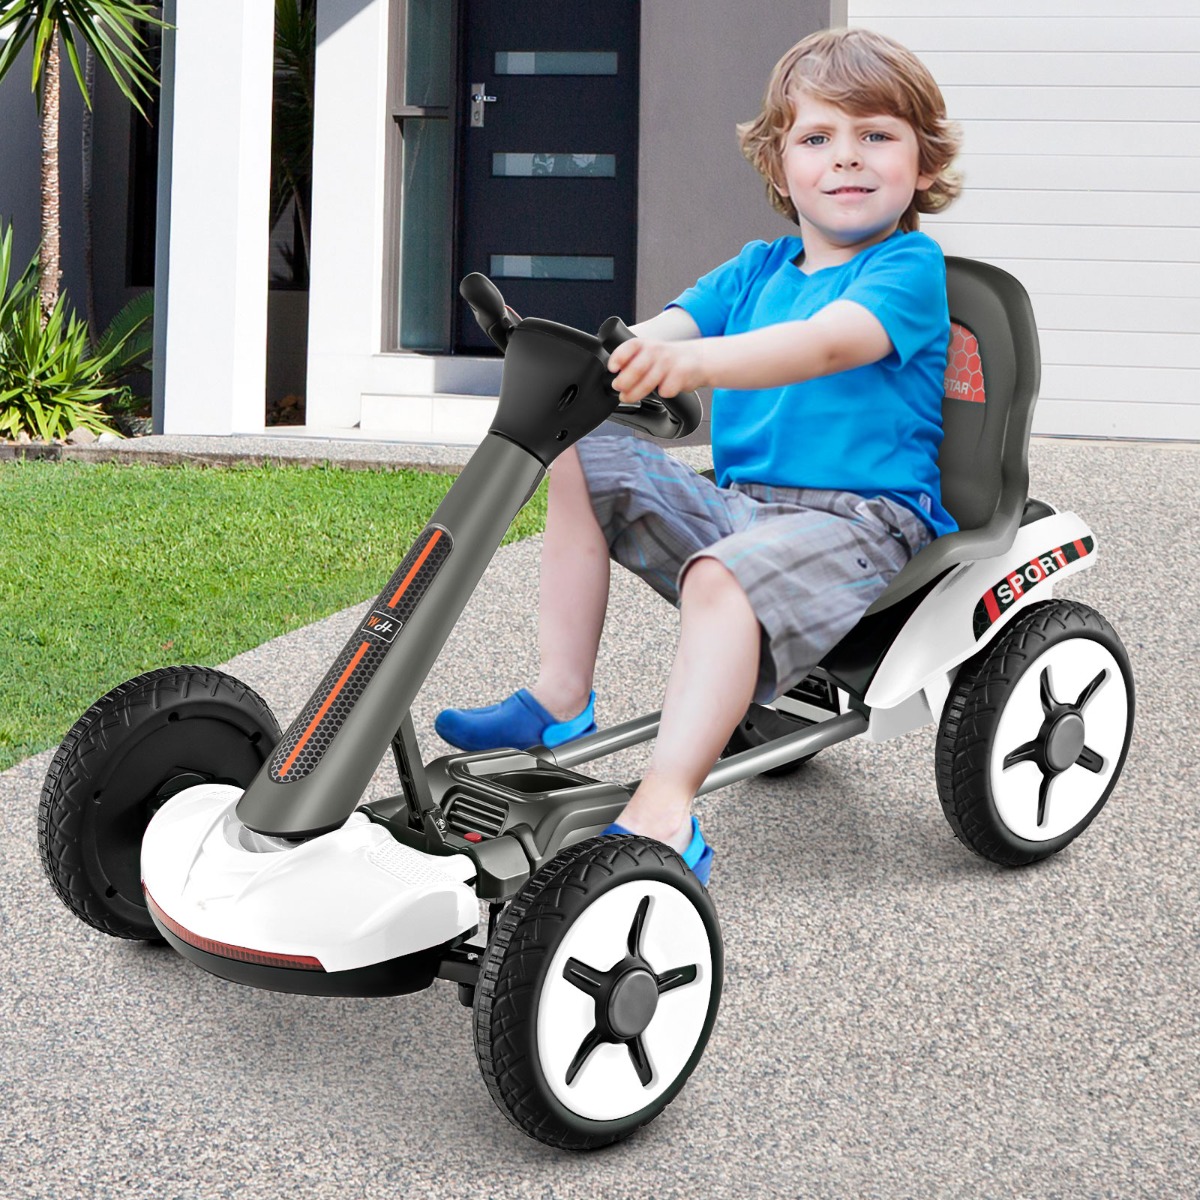 Costway Go Kart elettrico 12V per bambini, Go Kart pieghevole con volante e sedile regolabili pulsante di avvio Bianco